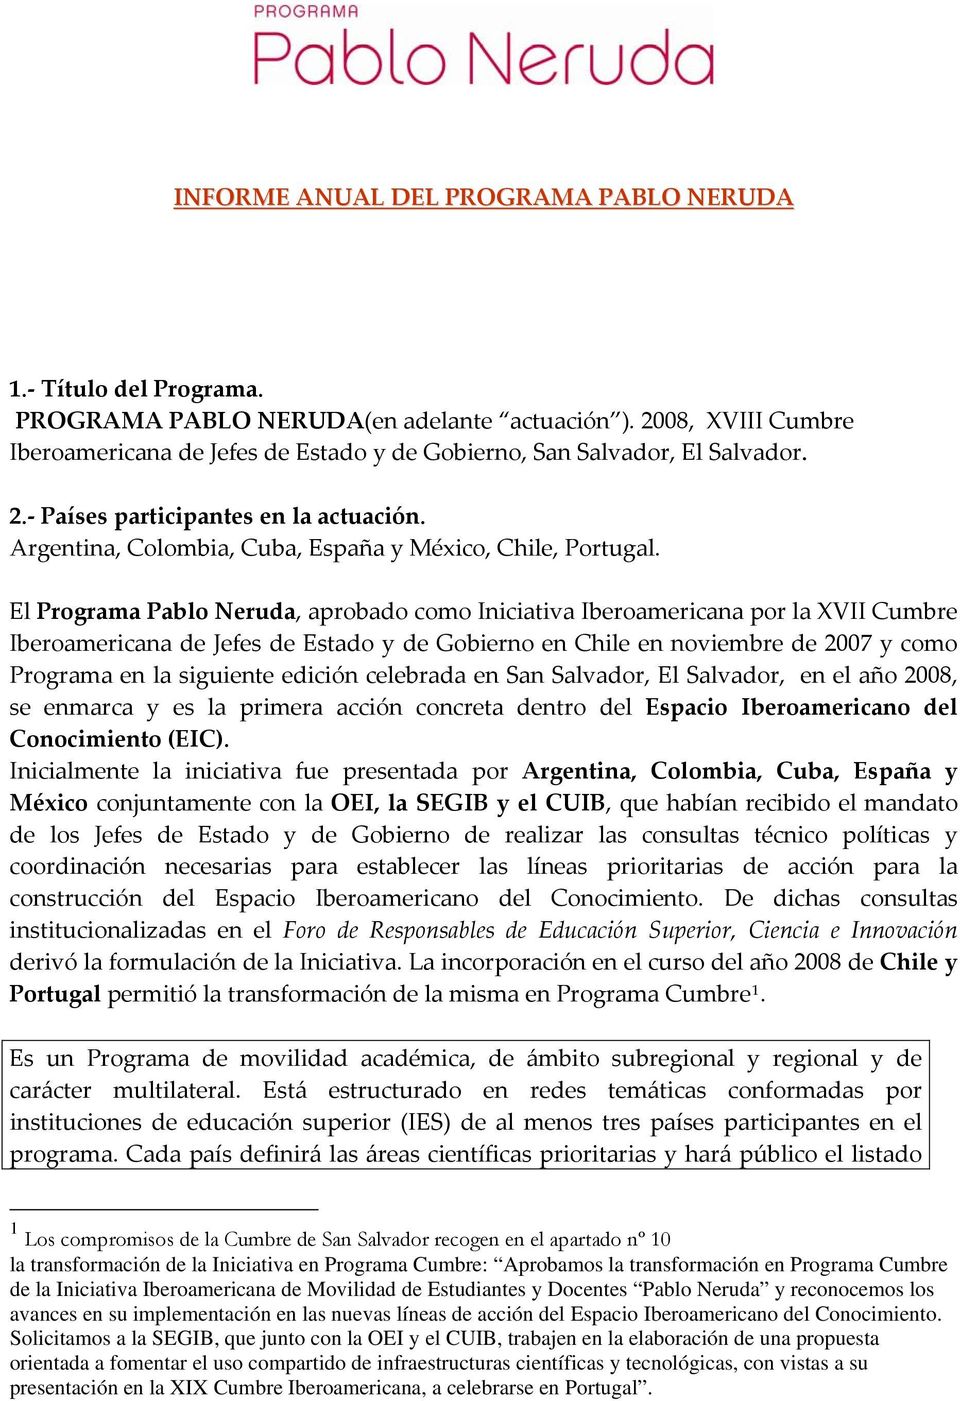 El Programa Pablo Neruda, aprobado como Iniciativa Iberoamericana por la XVII Cumbre Iberoamericana de Jefes de Estado y de Gobierno en Chile en noviembre de 2007 y como Programa en la siguiente